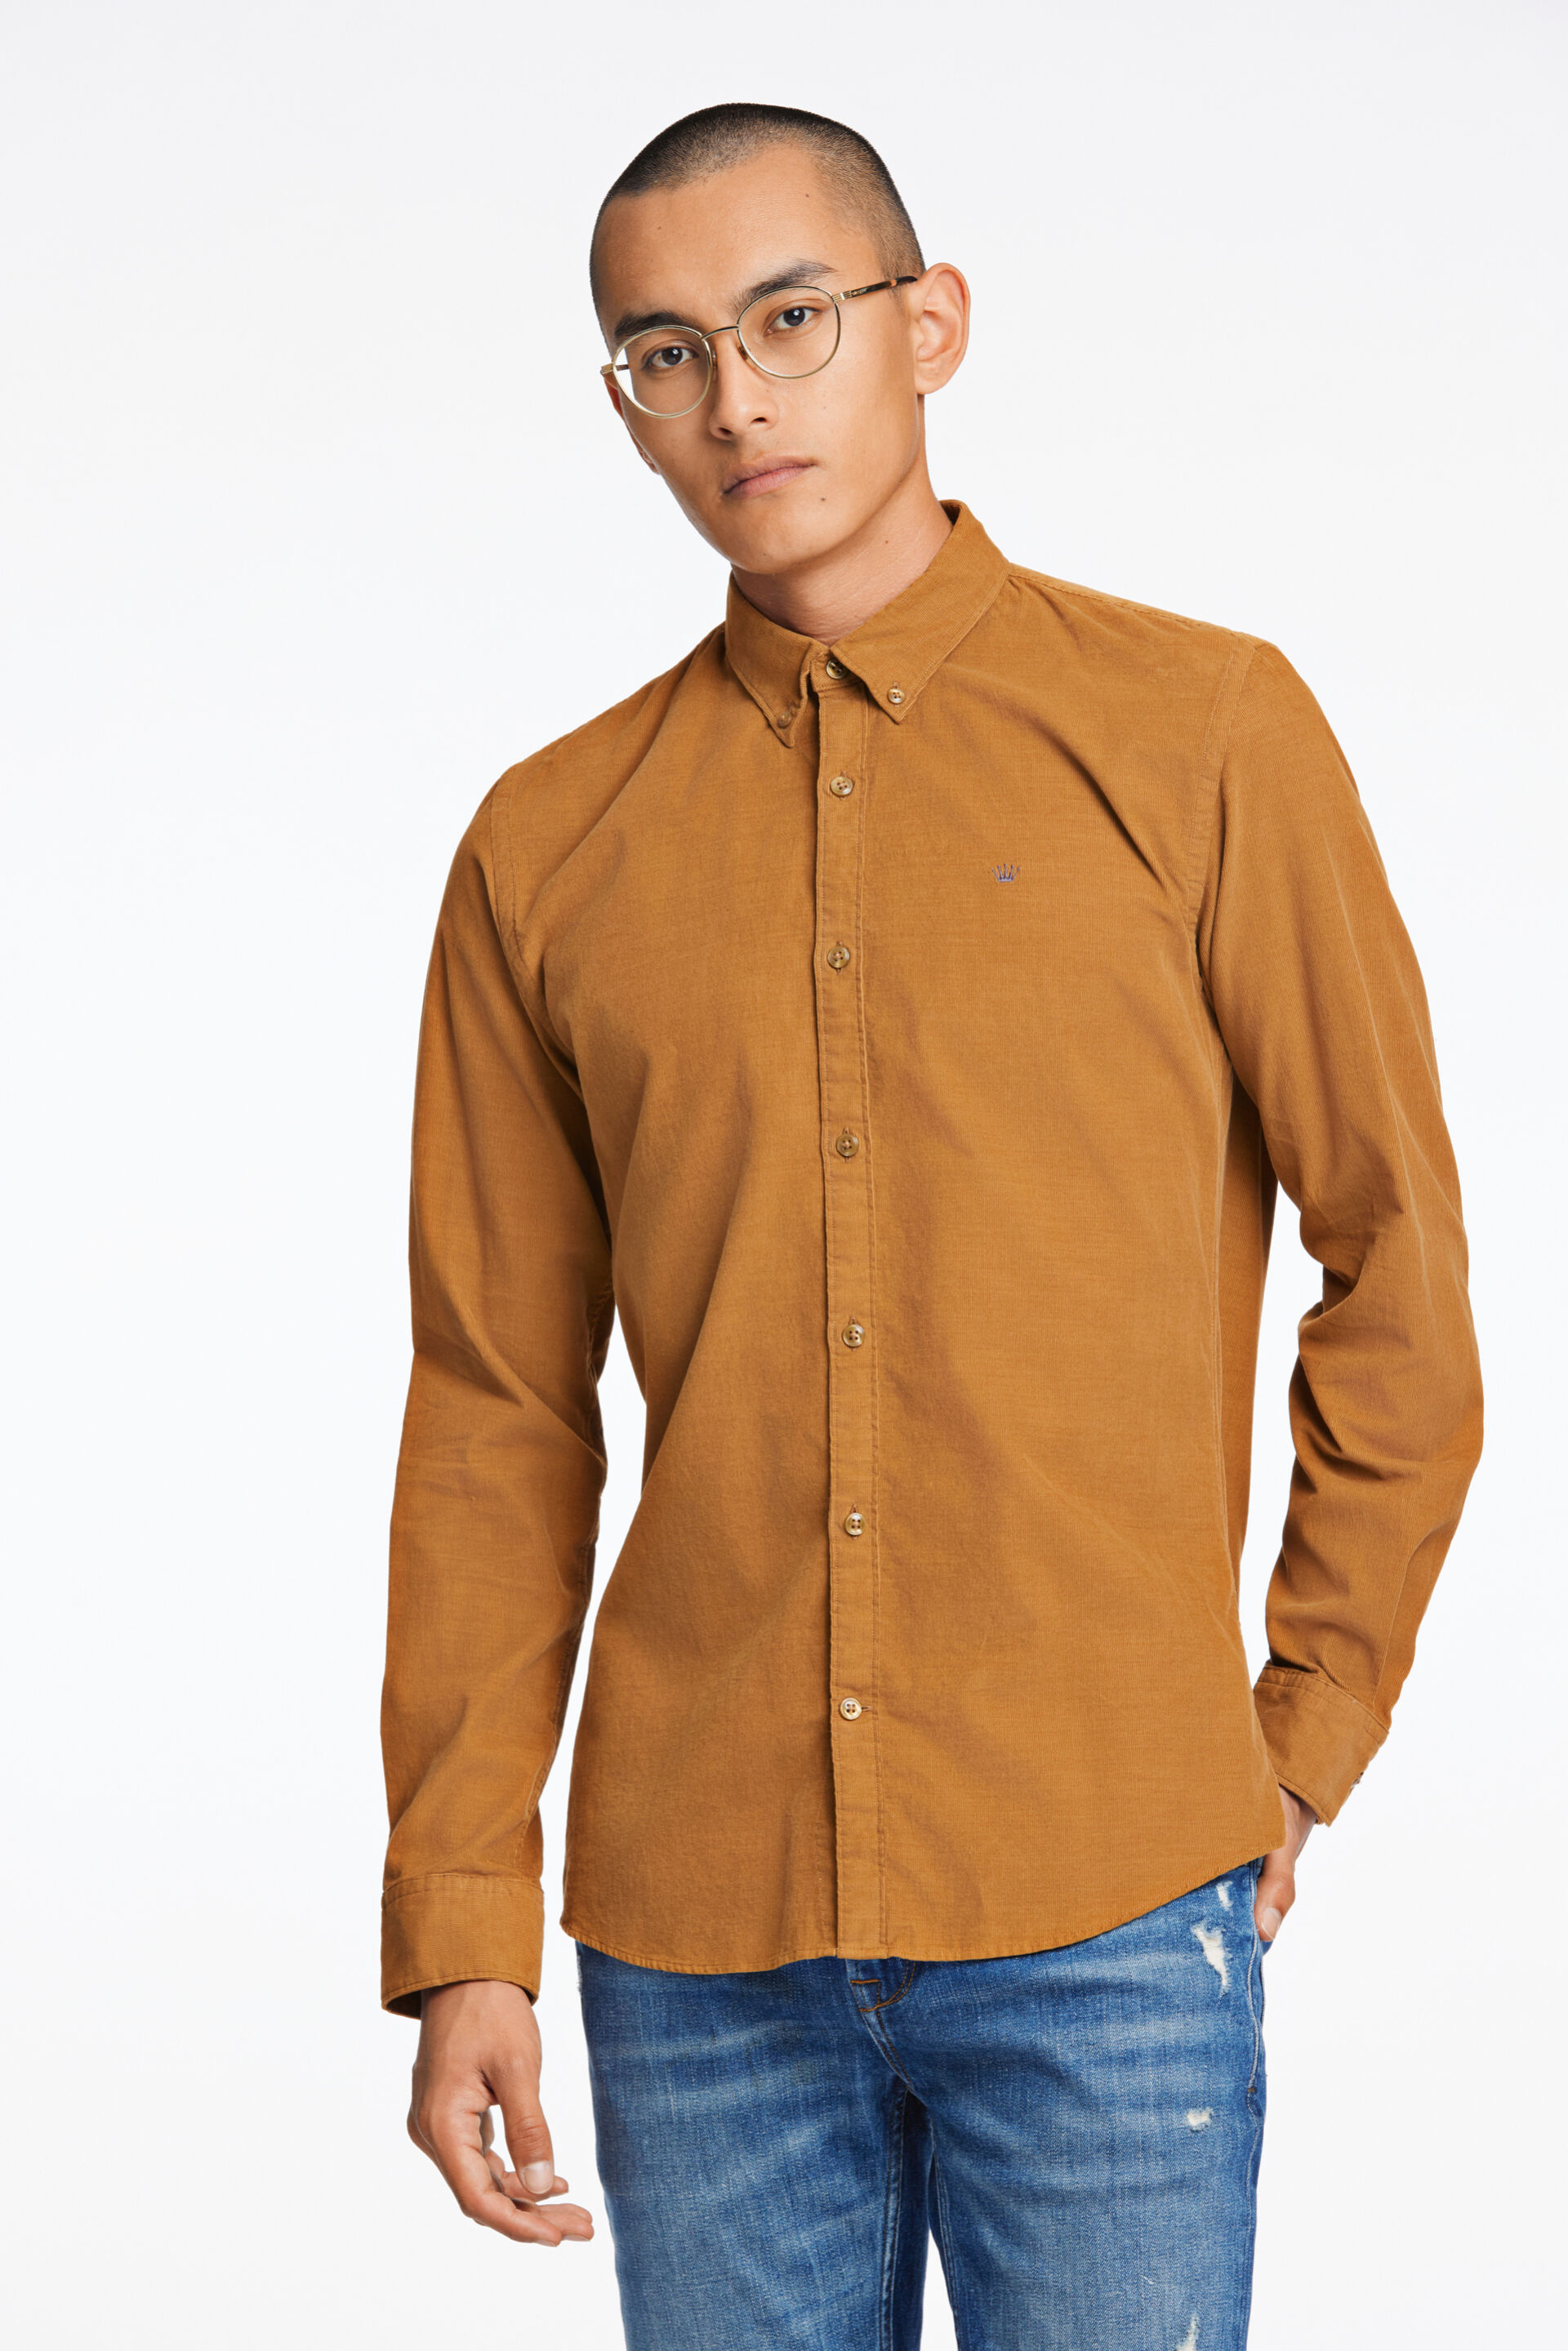 Junk de Luxe  Fløjlsskjorte Brun 60-205016